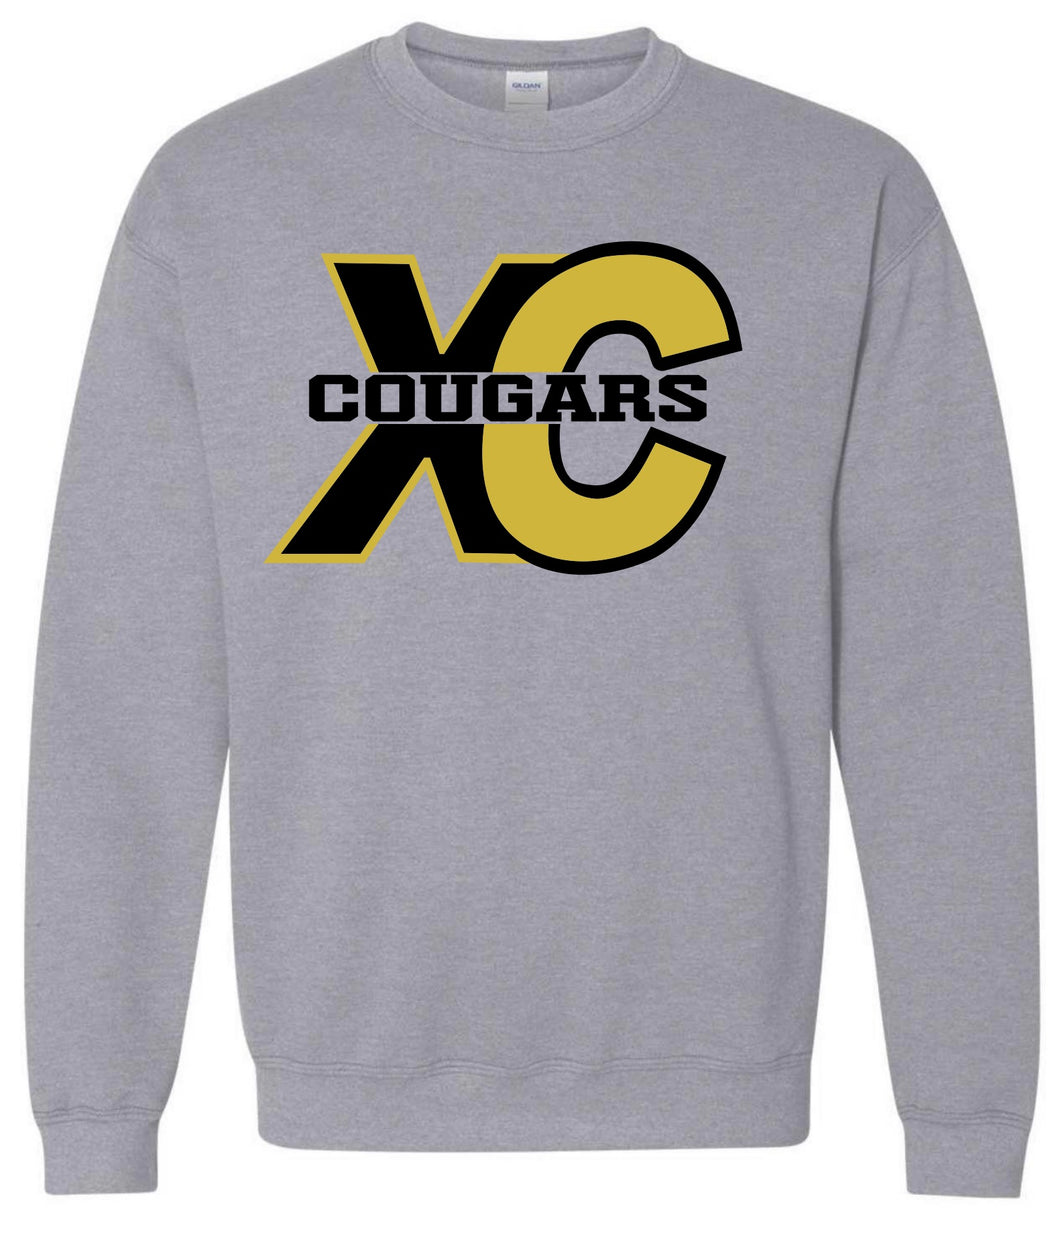 Cougars XC Sweatshirt